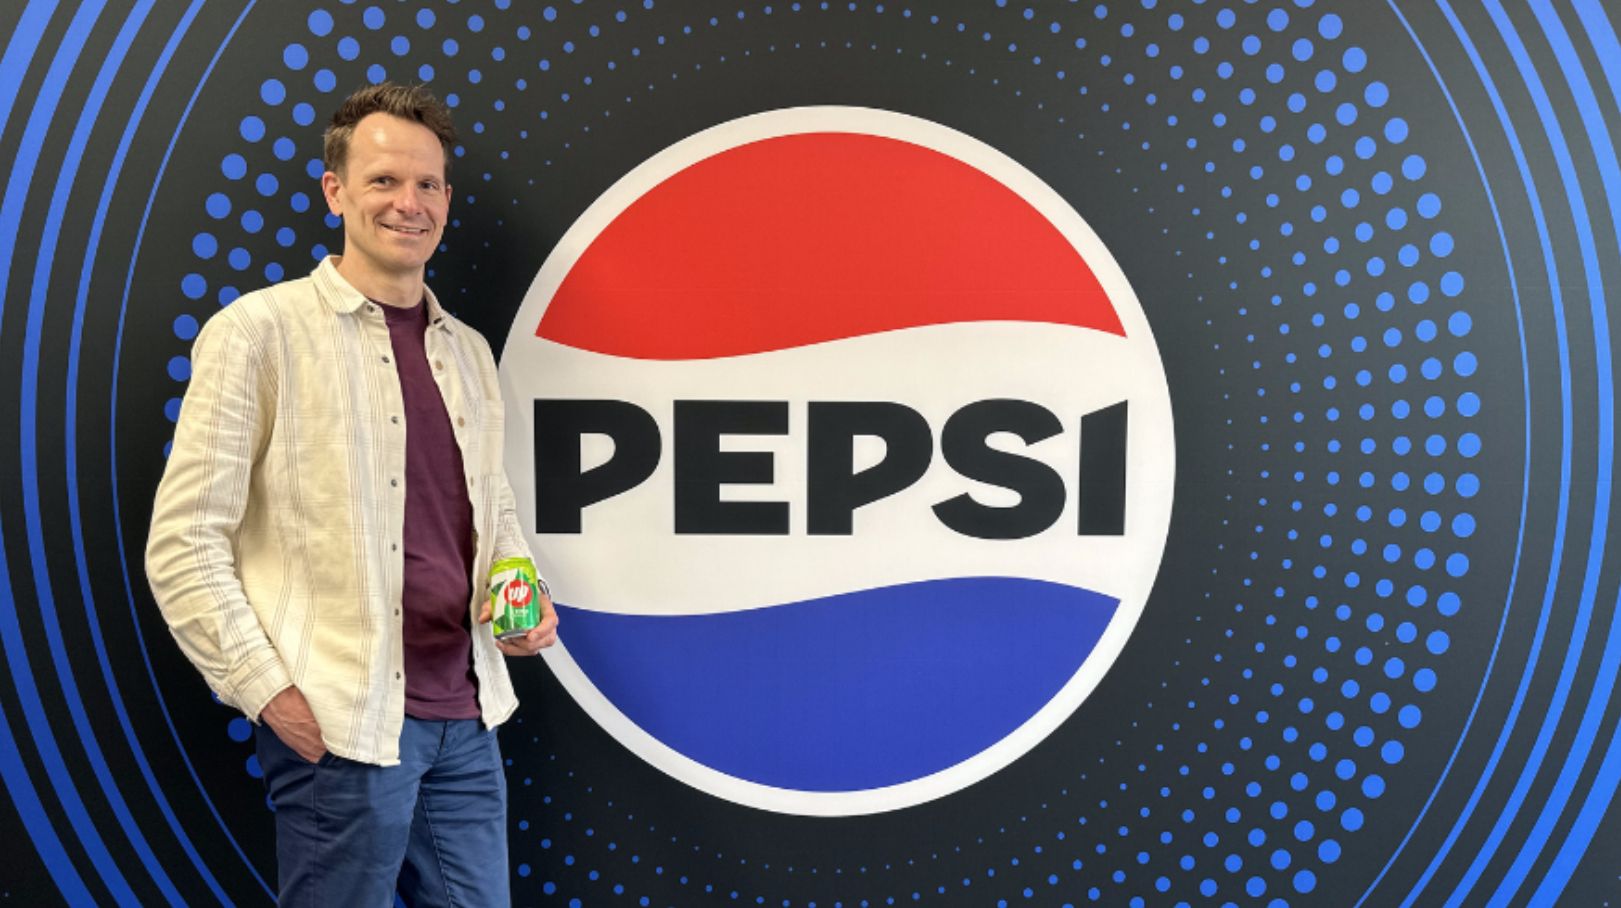 Stephan van Ee, Directeur Marketing bij Vrumona, over het nieuwe Pepsi design.